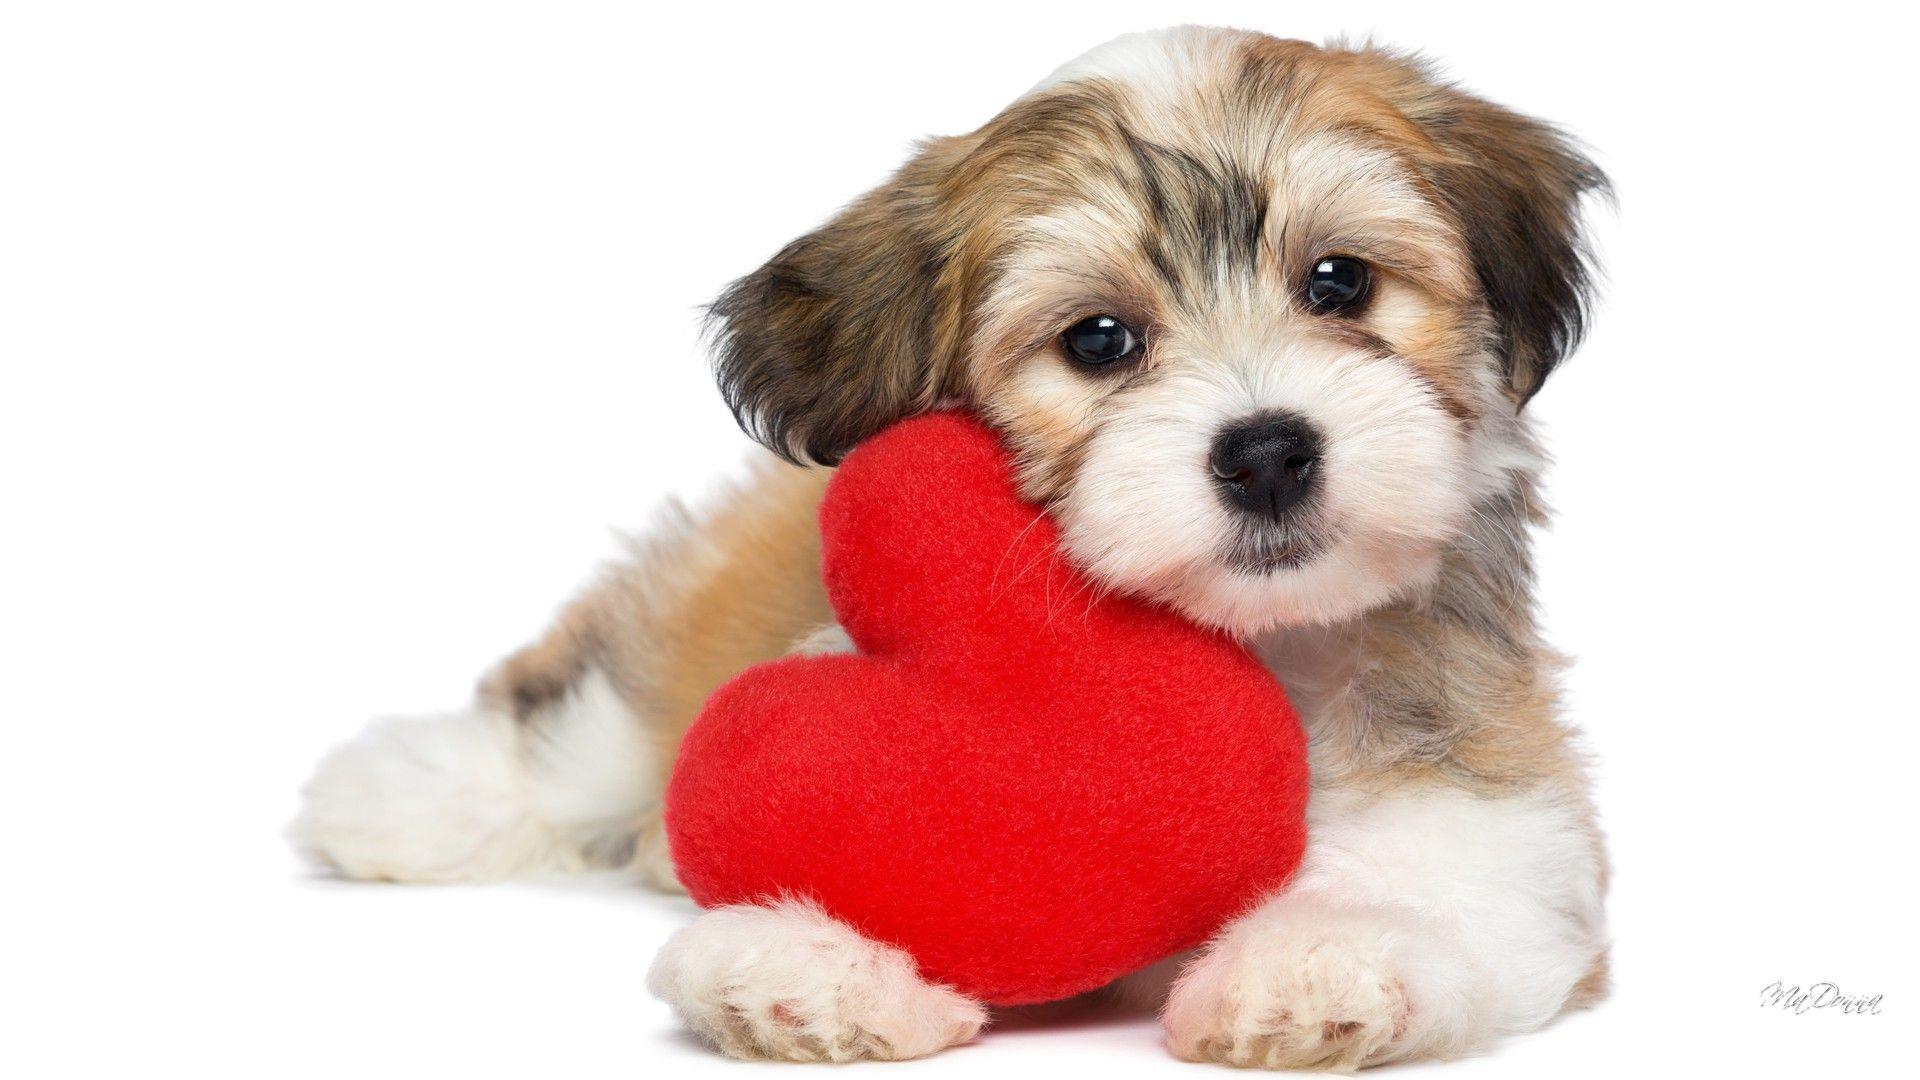 1920x1080 Con chó: Gối Ngày lễ tình nhân Trái tim ngọt ngào Con chó cưng Con chó con Pup tình yêu Canine